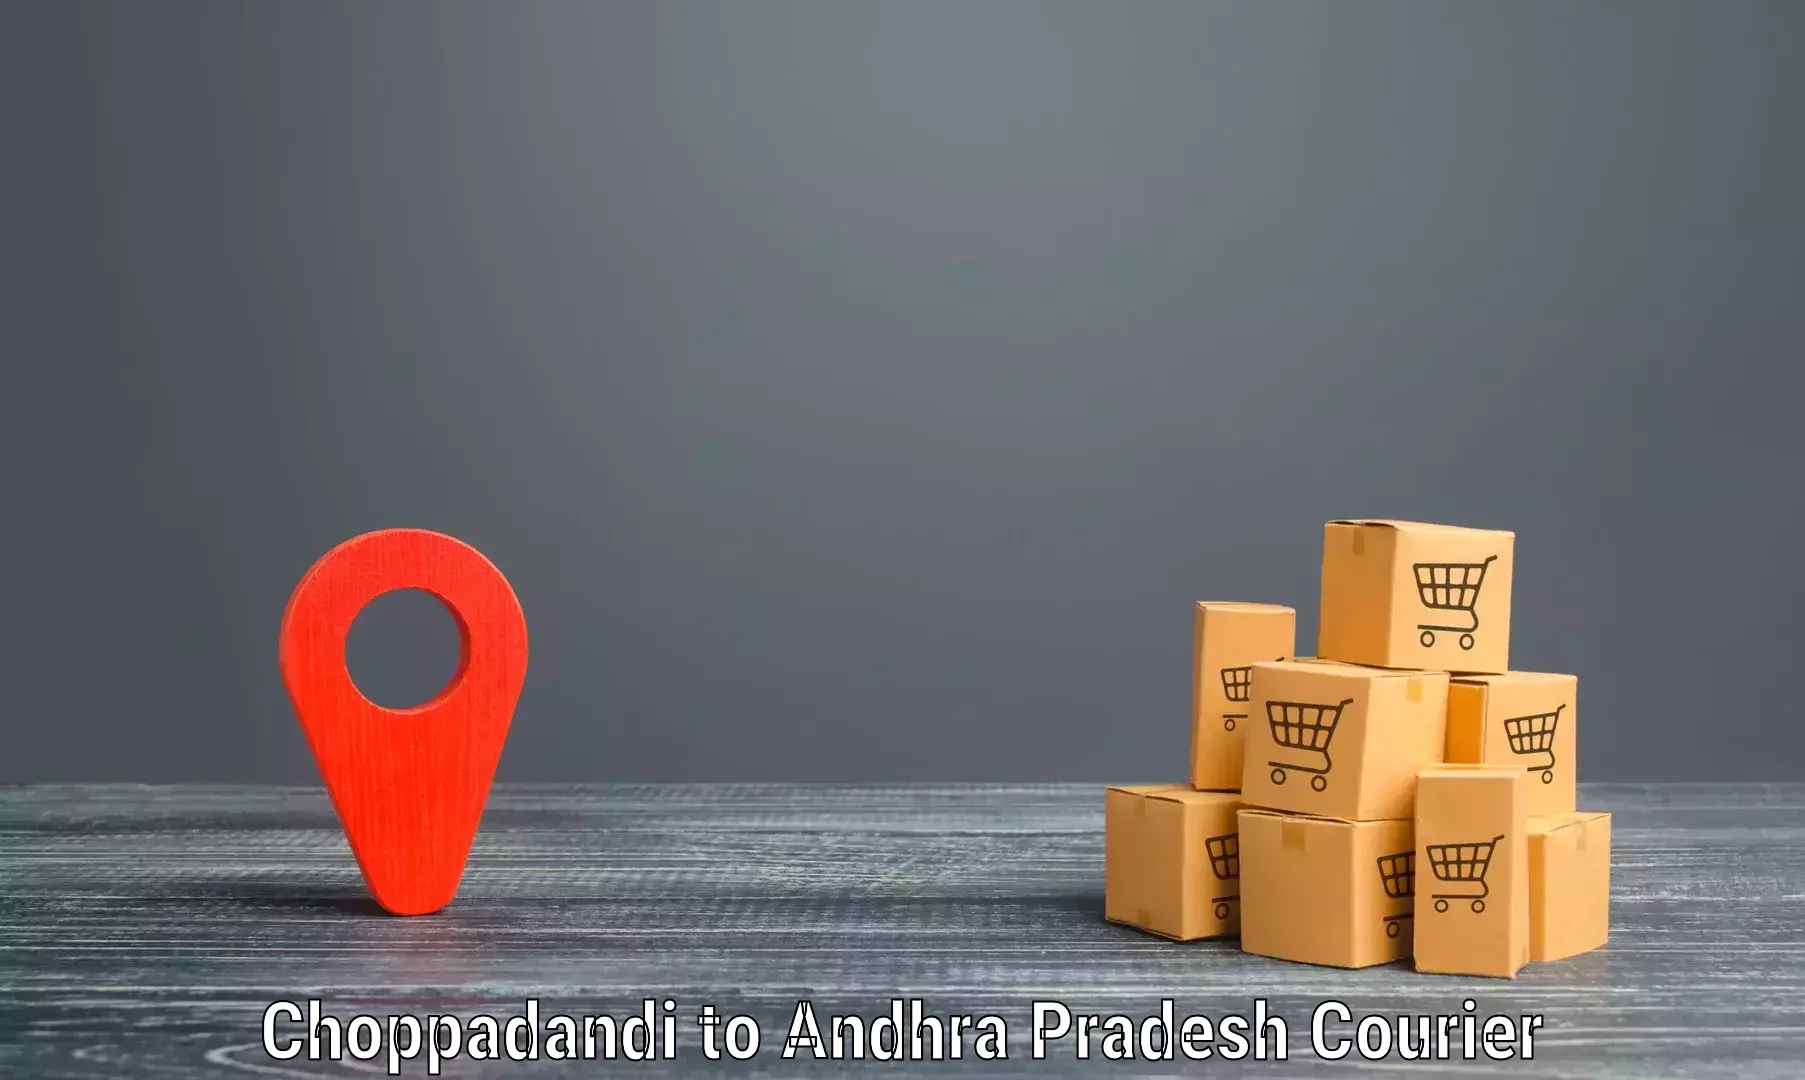 Efficient freight service Choppadandi to Kadapa